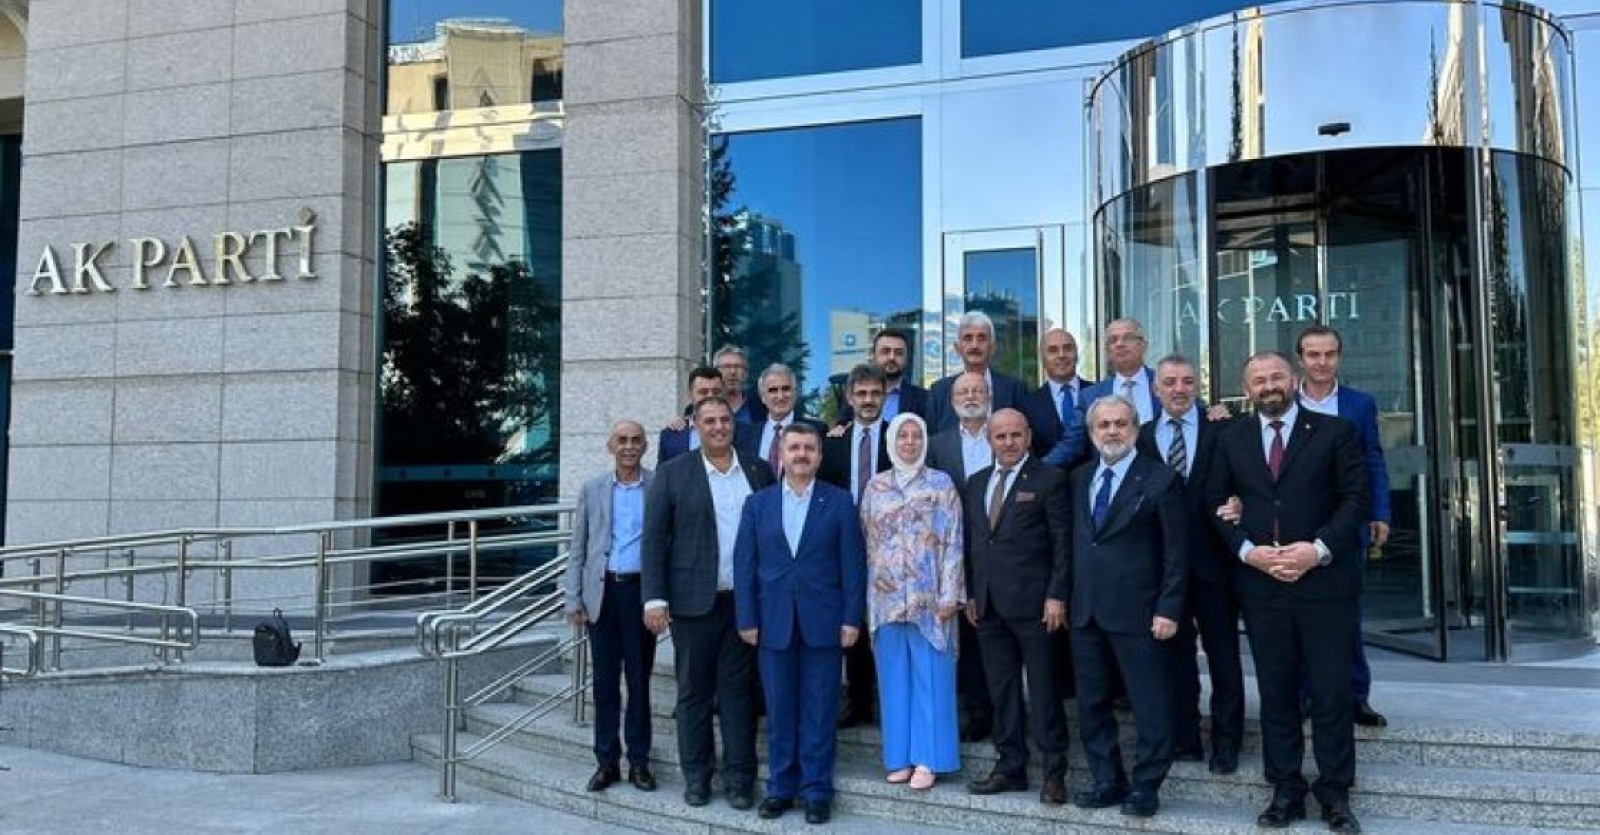 Önceki dönem ilçe başkanlarımız ile birlikte AK Parti Genel Merkez Kadın Kolları Teşkilat Başkanımız ve Bursa Milletvekilimiz Sn. Emine Yavuz Gözgeç’i ziyaret ettik.